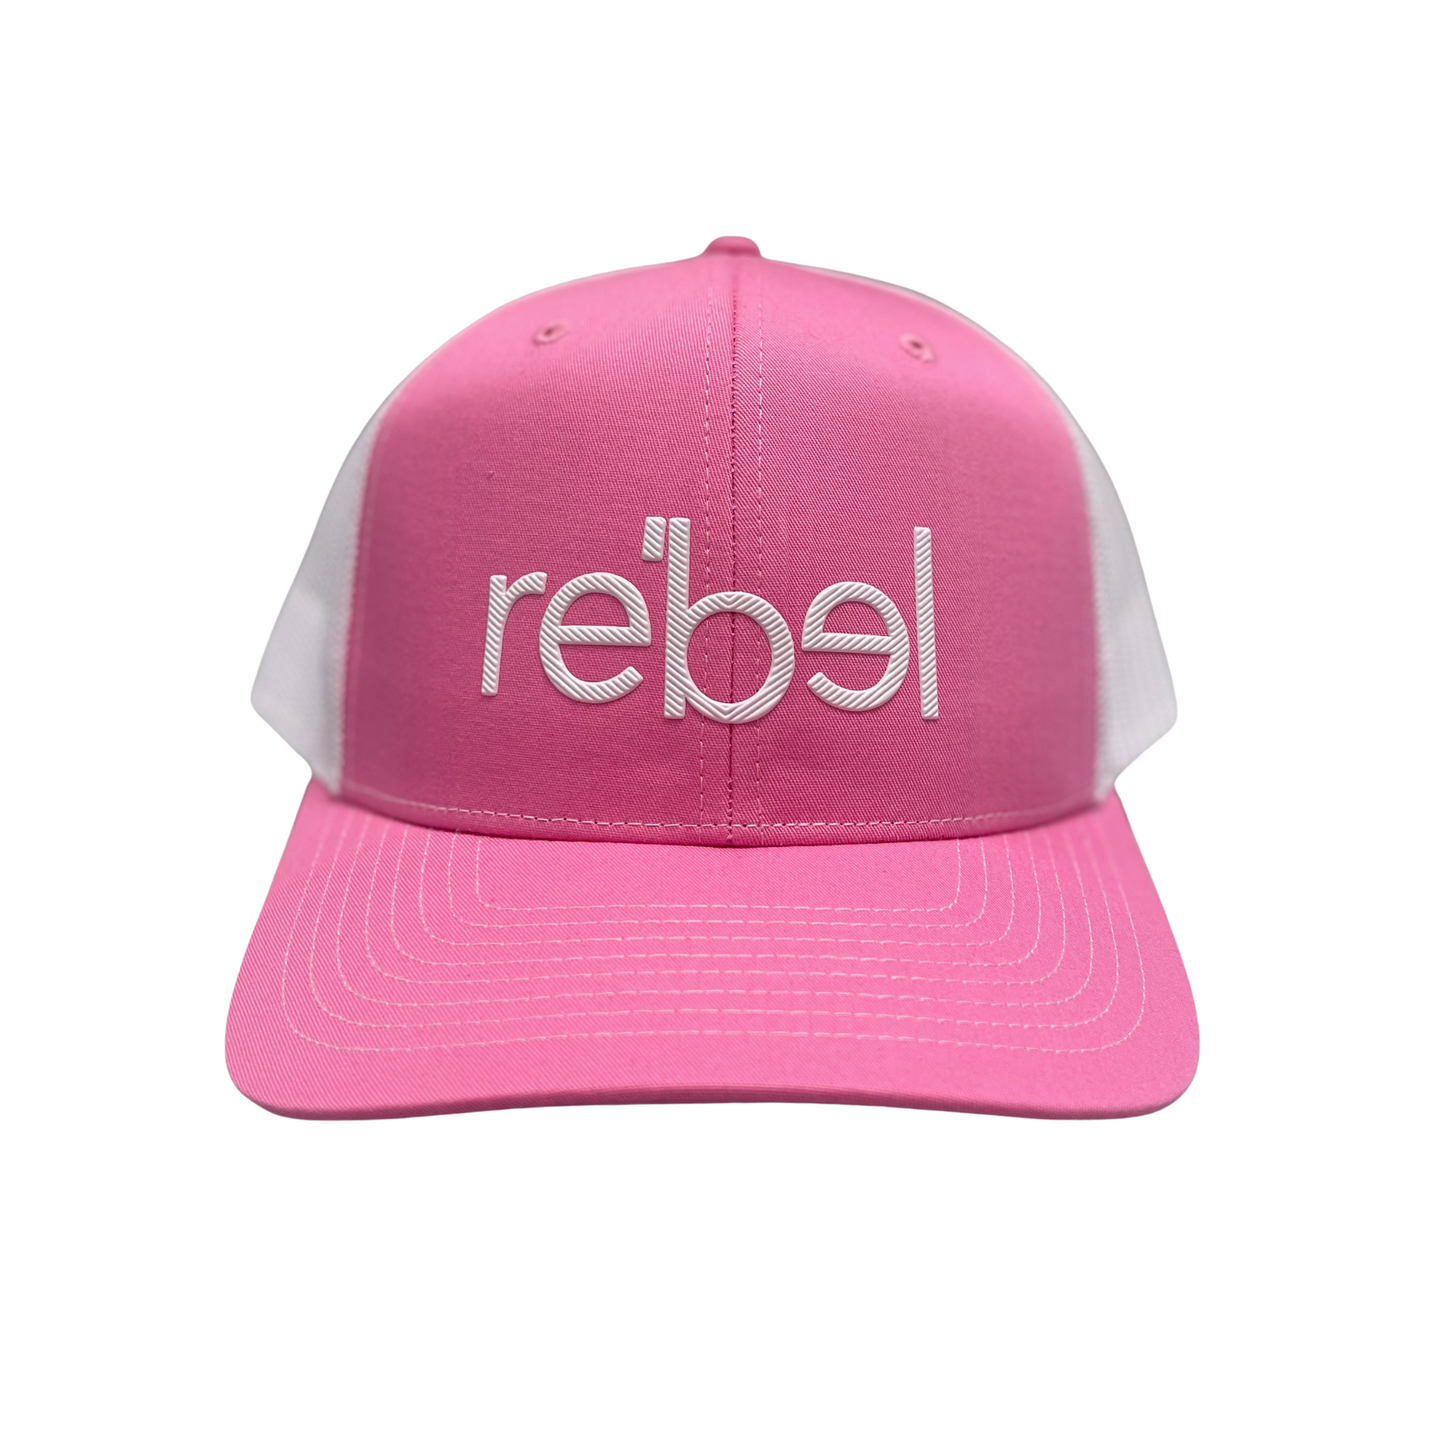 Rebel Mesh Back (Pink, Rebel logo)